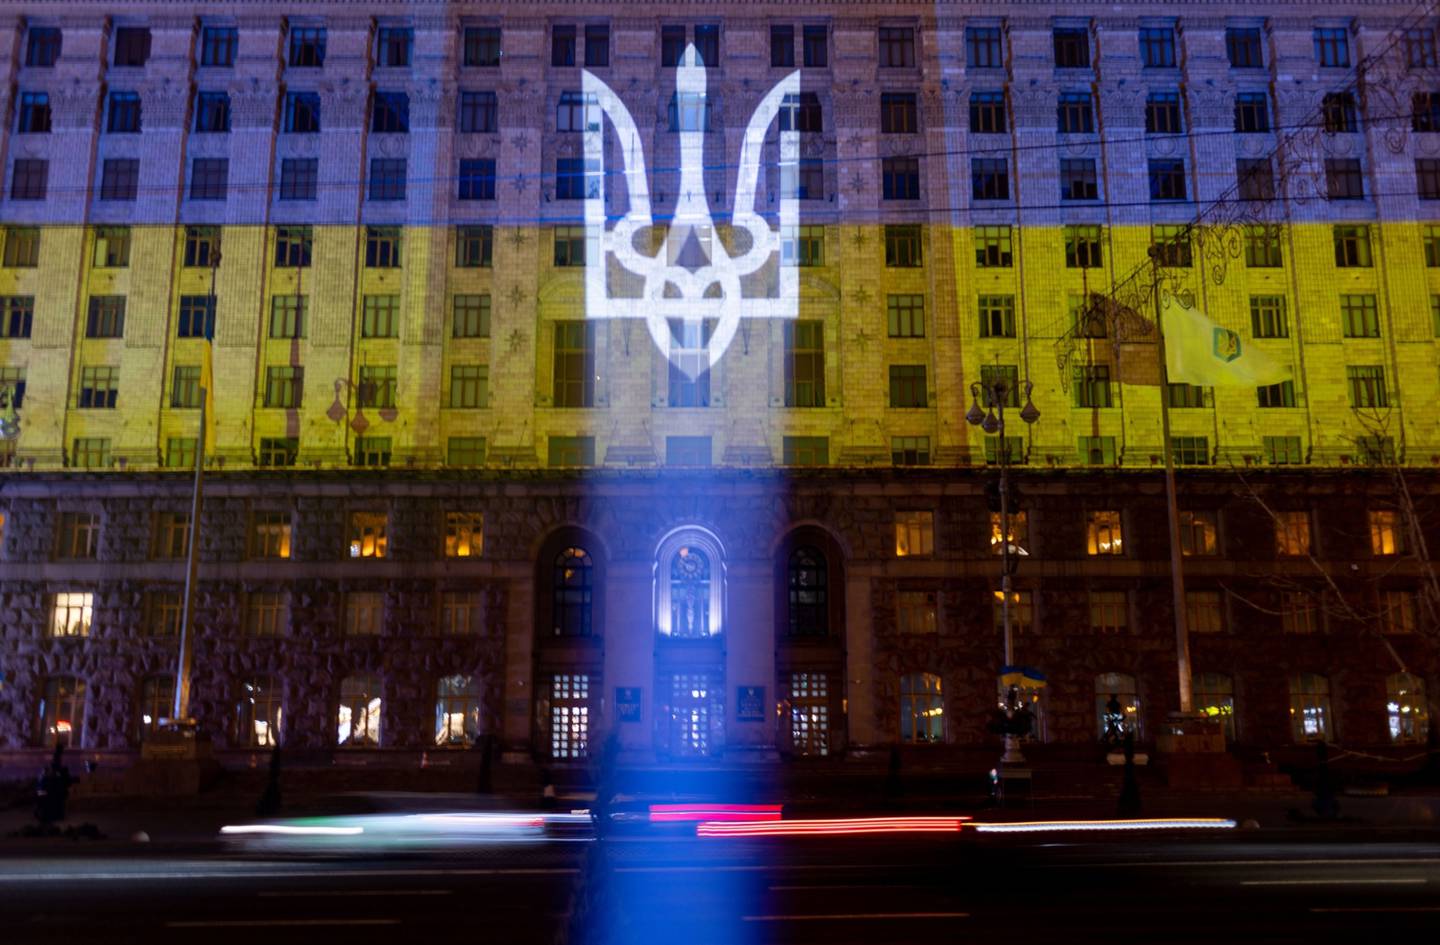 El escudo de armas y la bandera nacional de Ucrania se proyectan en un edificio durante un "Día de la Unidad" en Kiev, Ucrania.